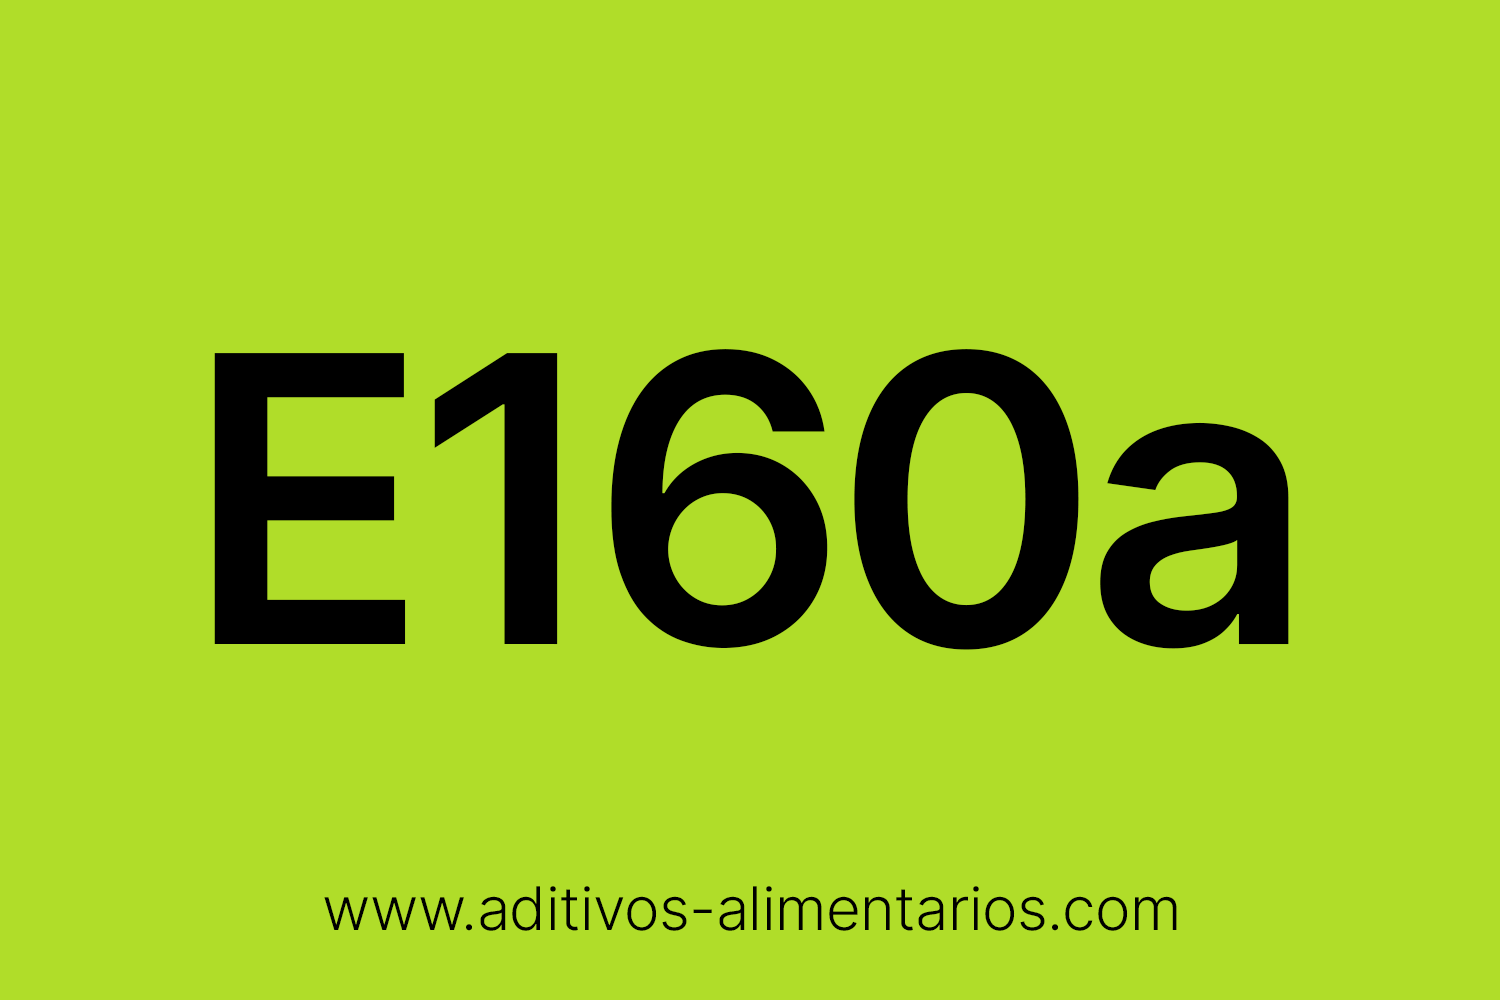 Aditivo Alimentario - E160a(i) - Betacaroteno Sintético